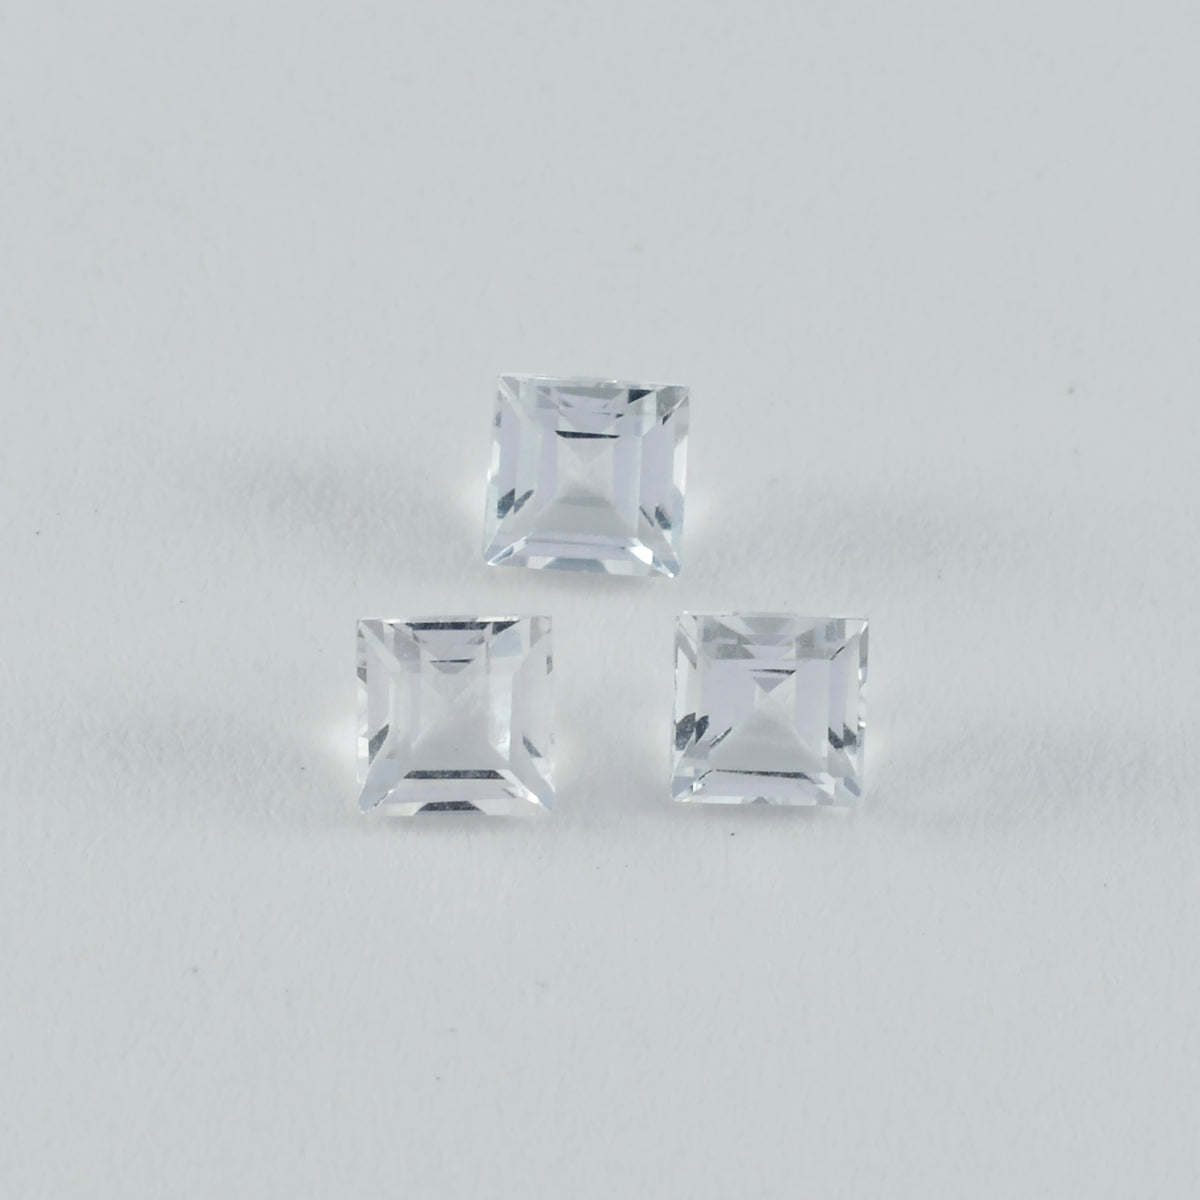 Riyogems 1 Stück weißer Kristallquarz, facettiert, 5 x 5 mm, quadratische Form, hübsche, hochwertige lose Edelsteine